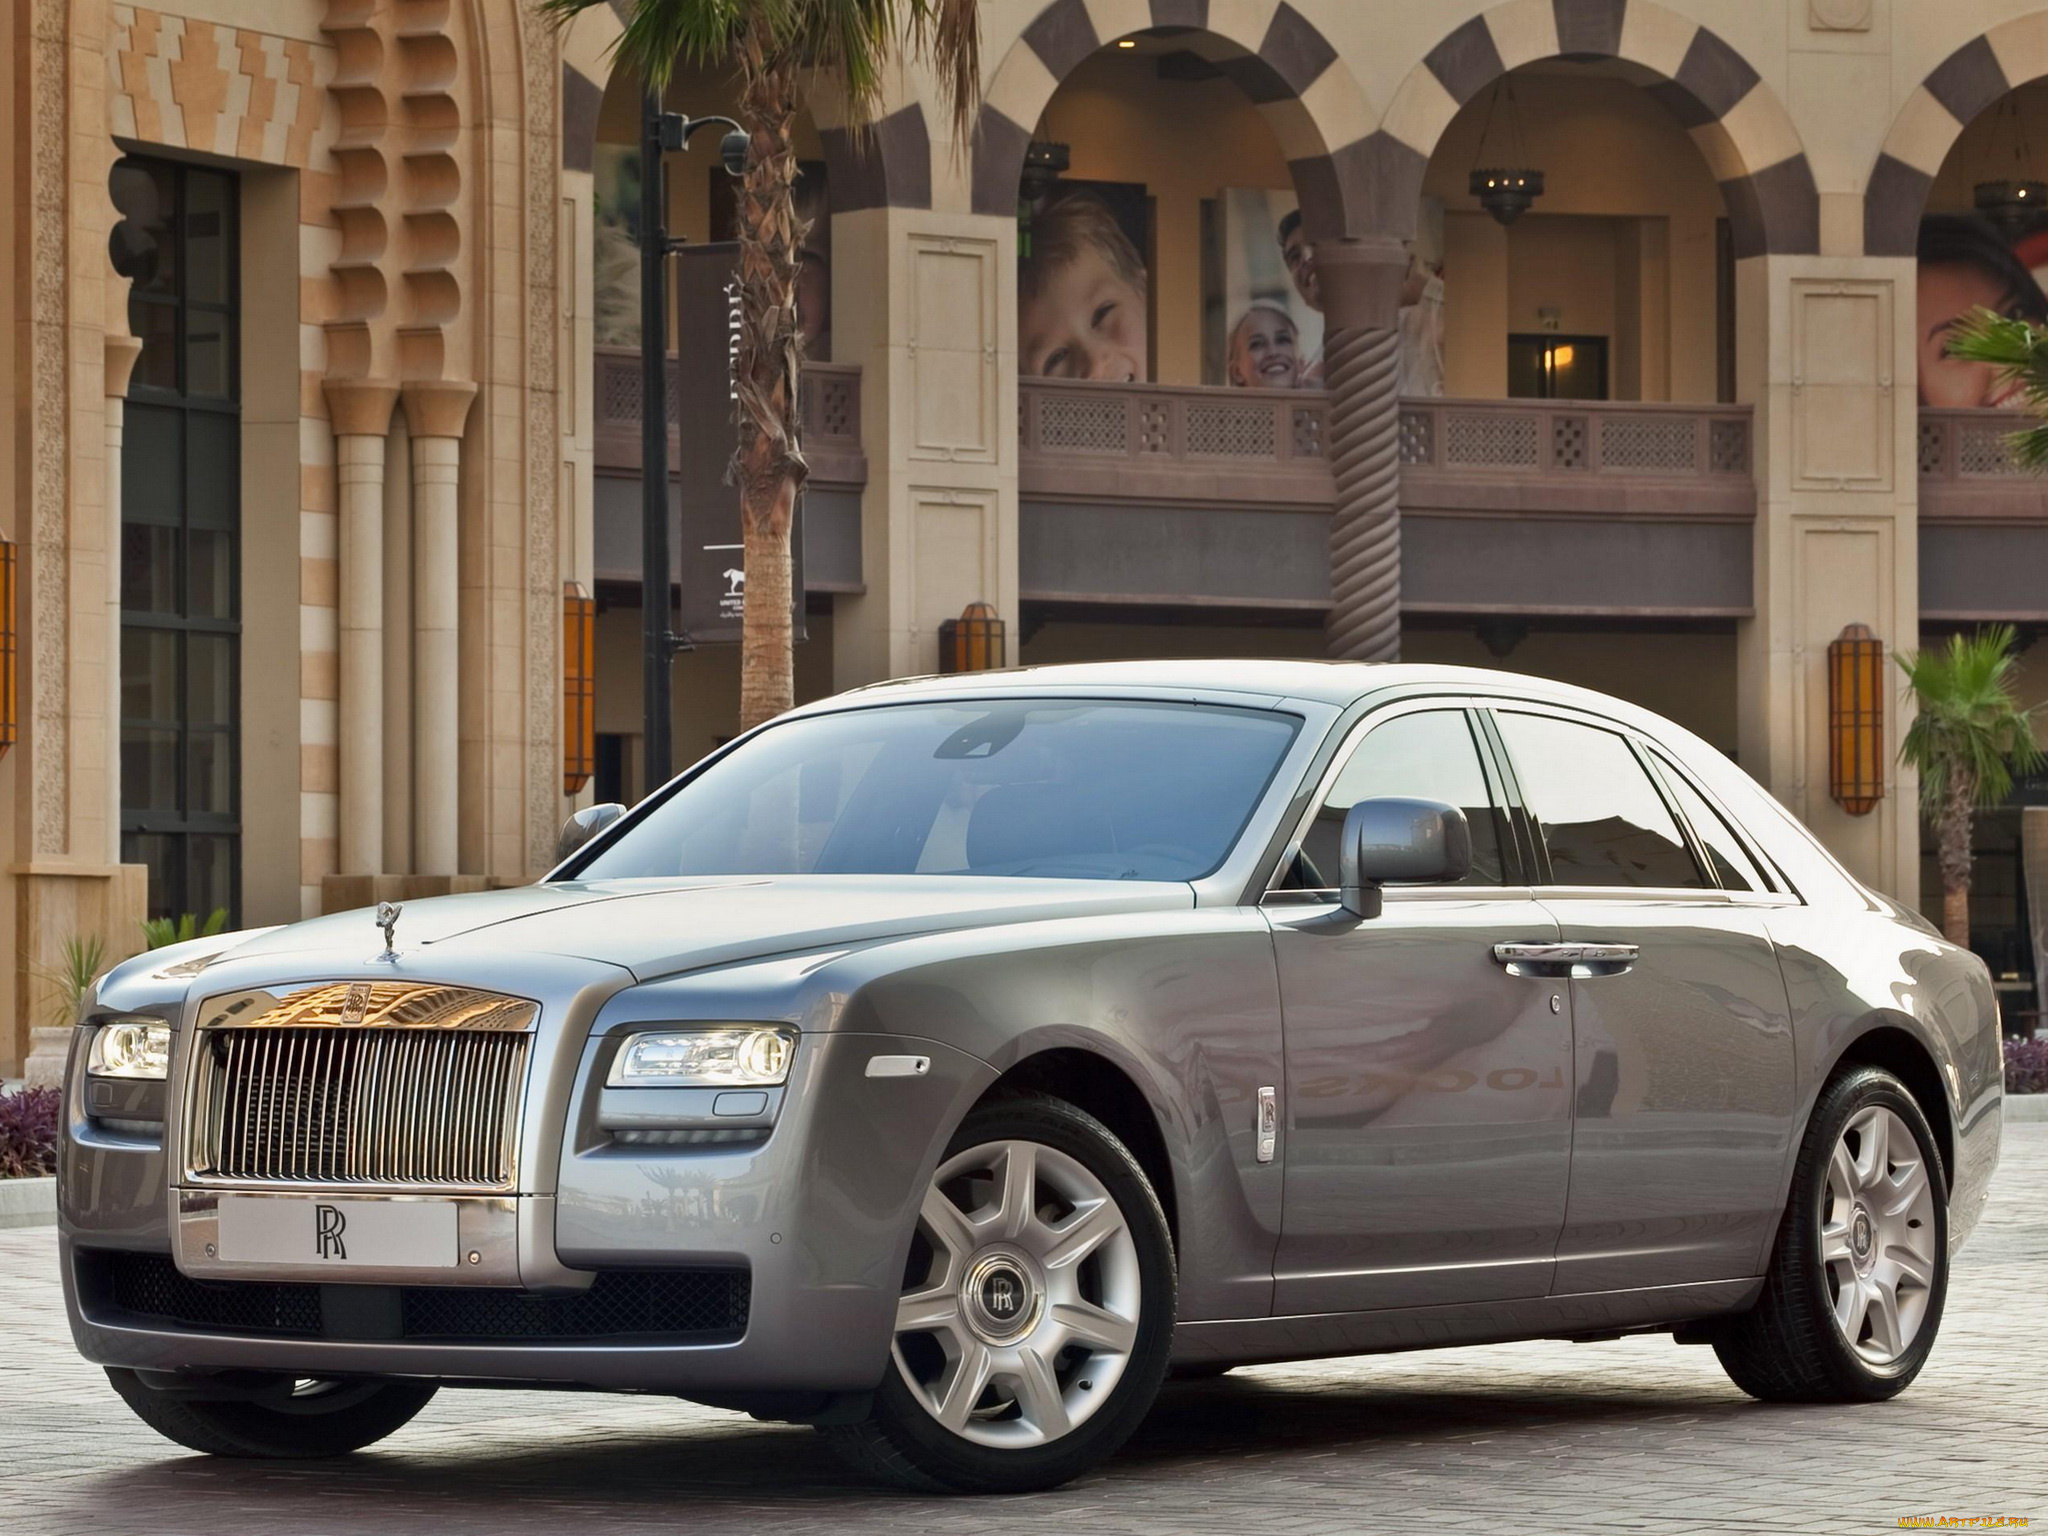 Rolls com. Rolls Royce Ghost. Rolls Royce Ghost 2009. Rolls Royce Ghost 2021. Rolls Royce Ghost 2010.